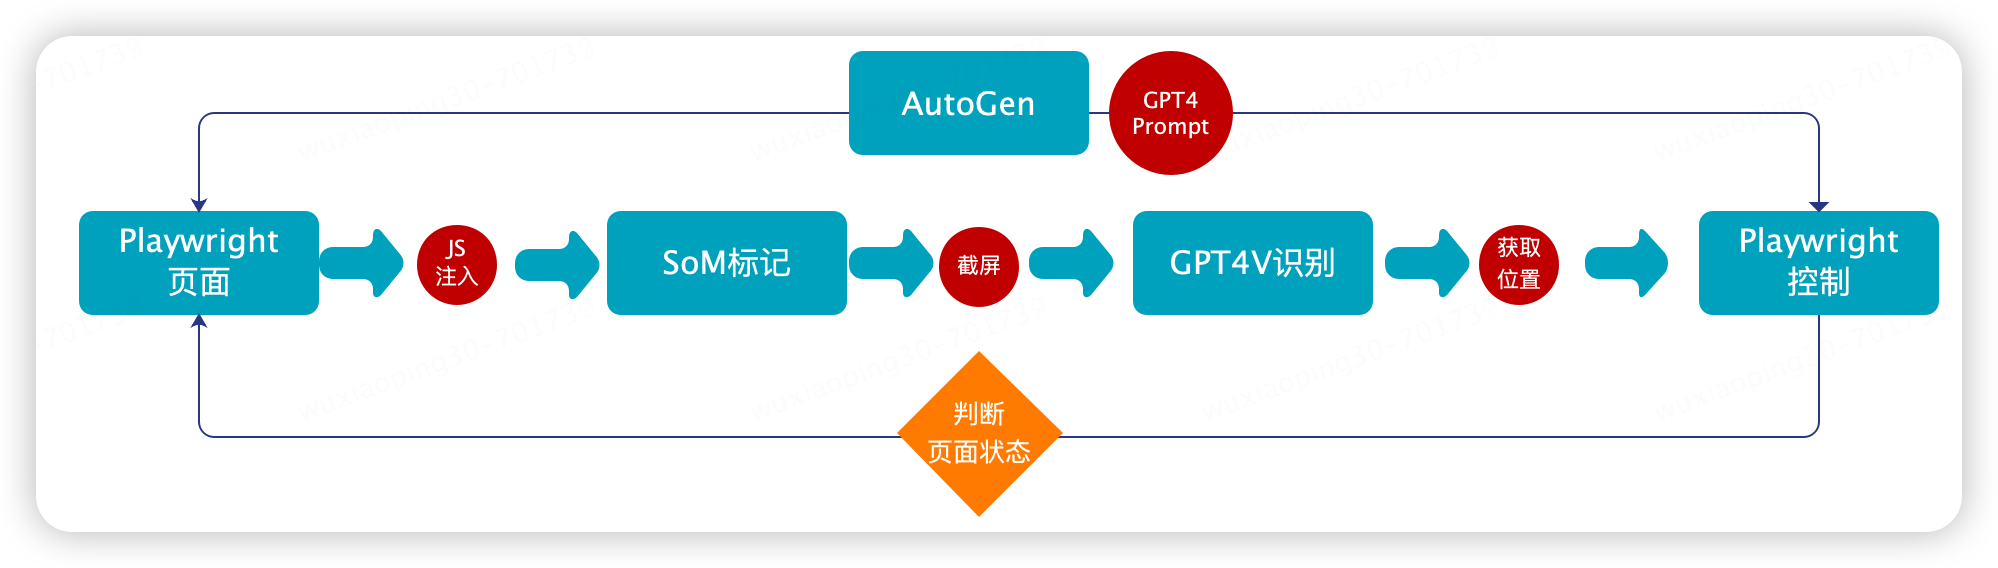 使用 GPT4V+AI Agent 做自动 UI 测试的探索 | 京东云技术团队